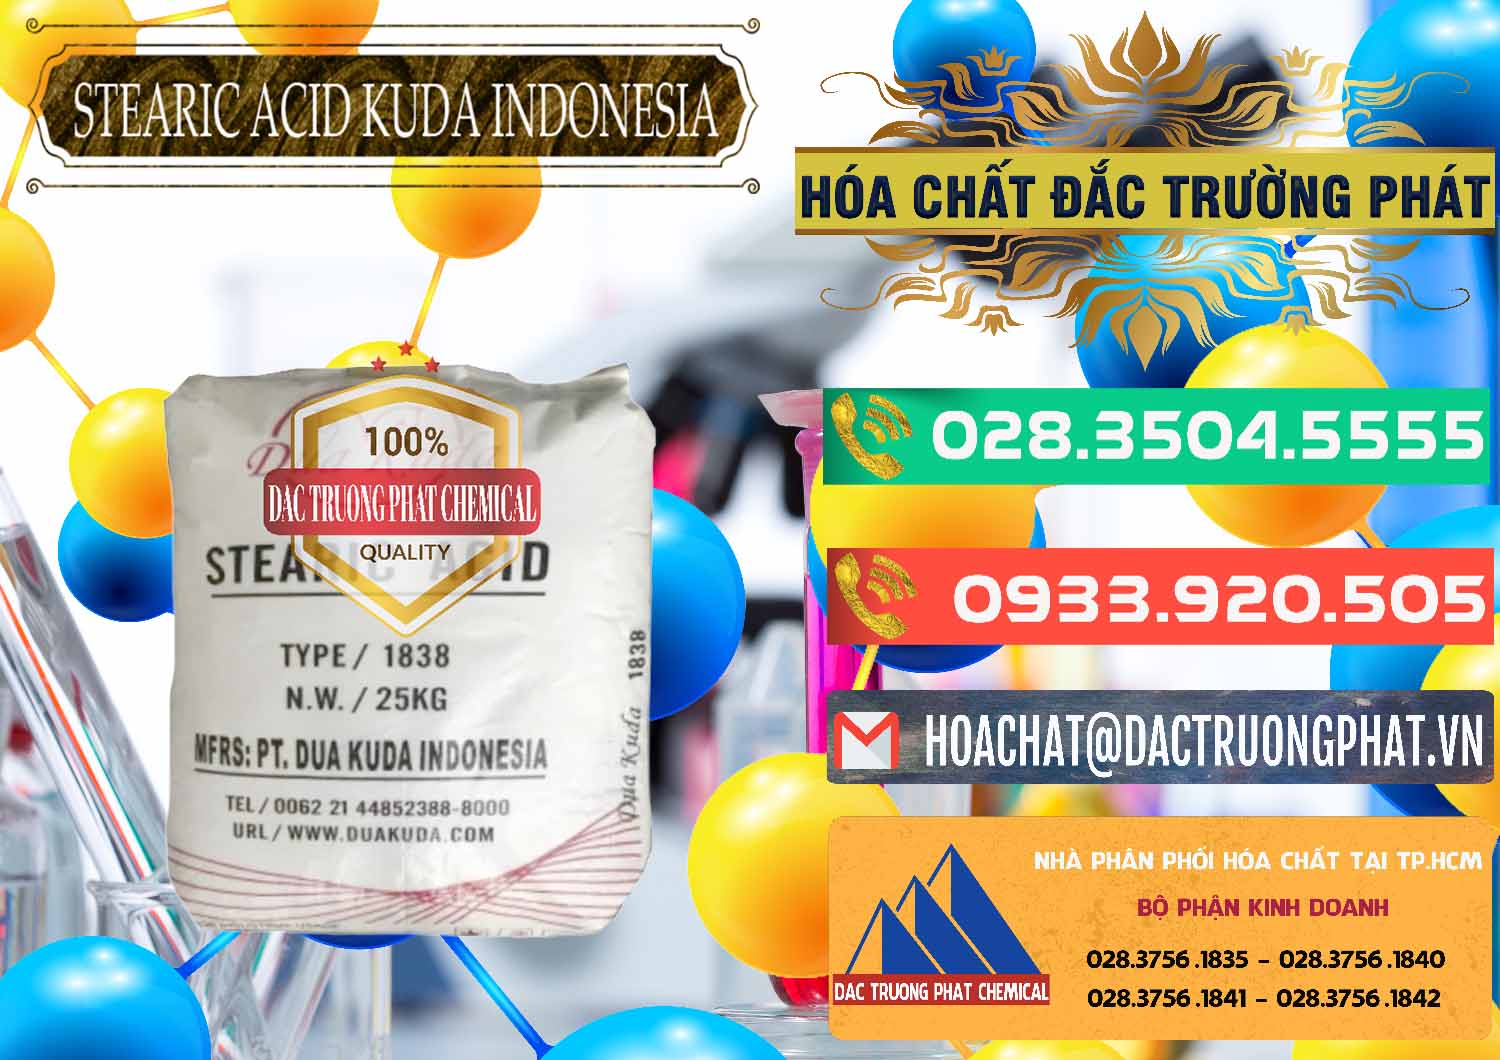 Nơi chuyên bán - phân phối Axit Stearic - Stearic Acid Dua Kuda Indonesia - 0388 - Cty chuyên bán _ phân phối hóa chất tại TP.HCM - congtyhoachat.com.vn